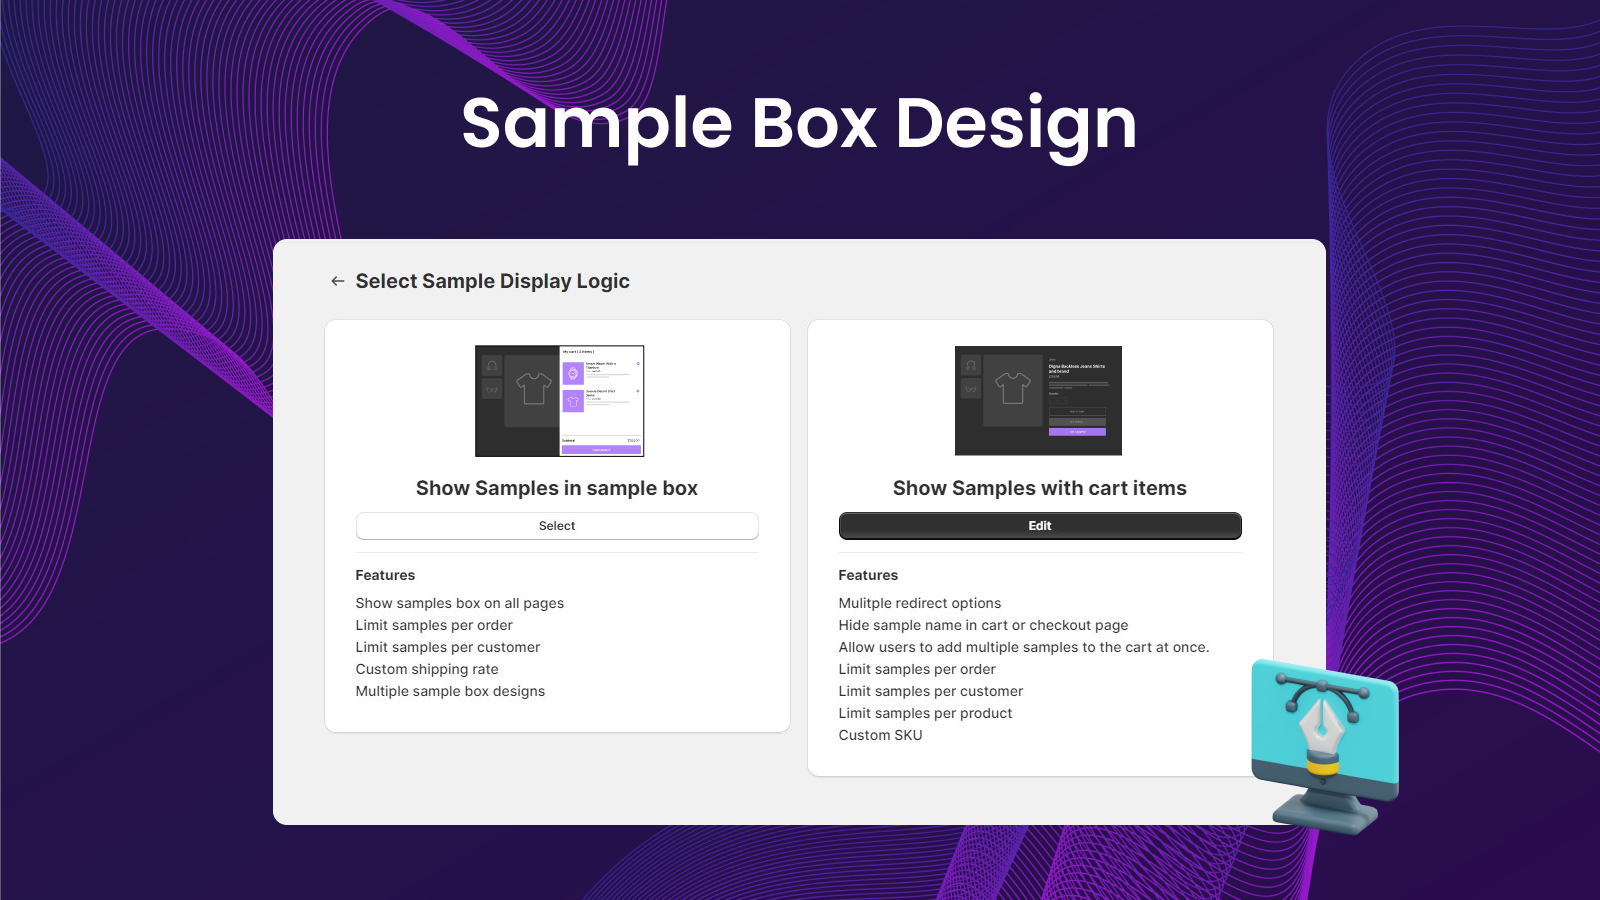 Mini ‑ Product Samples Screenshot